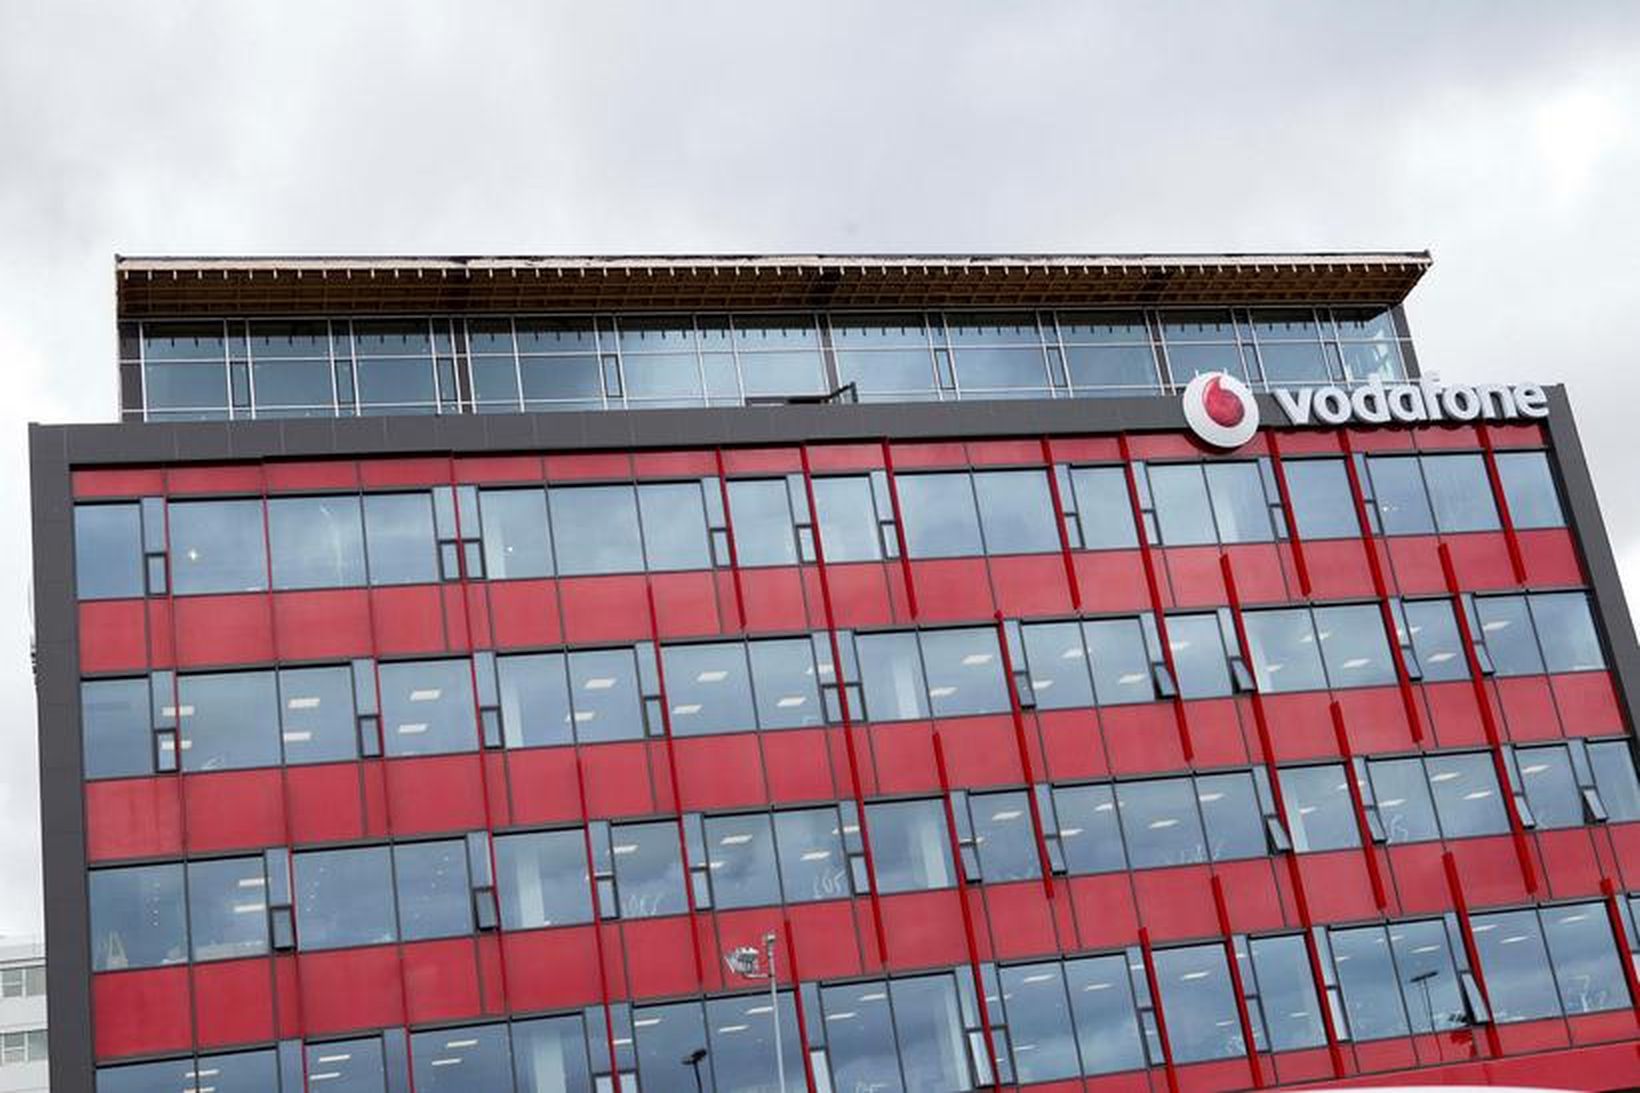 Höfuðstöðvar Vodafone við Suðurlandsbraut.